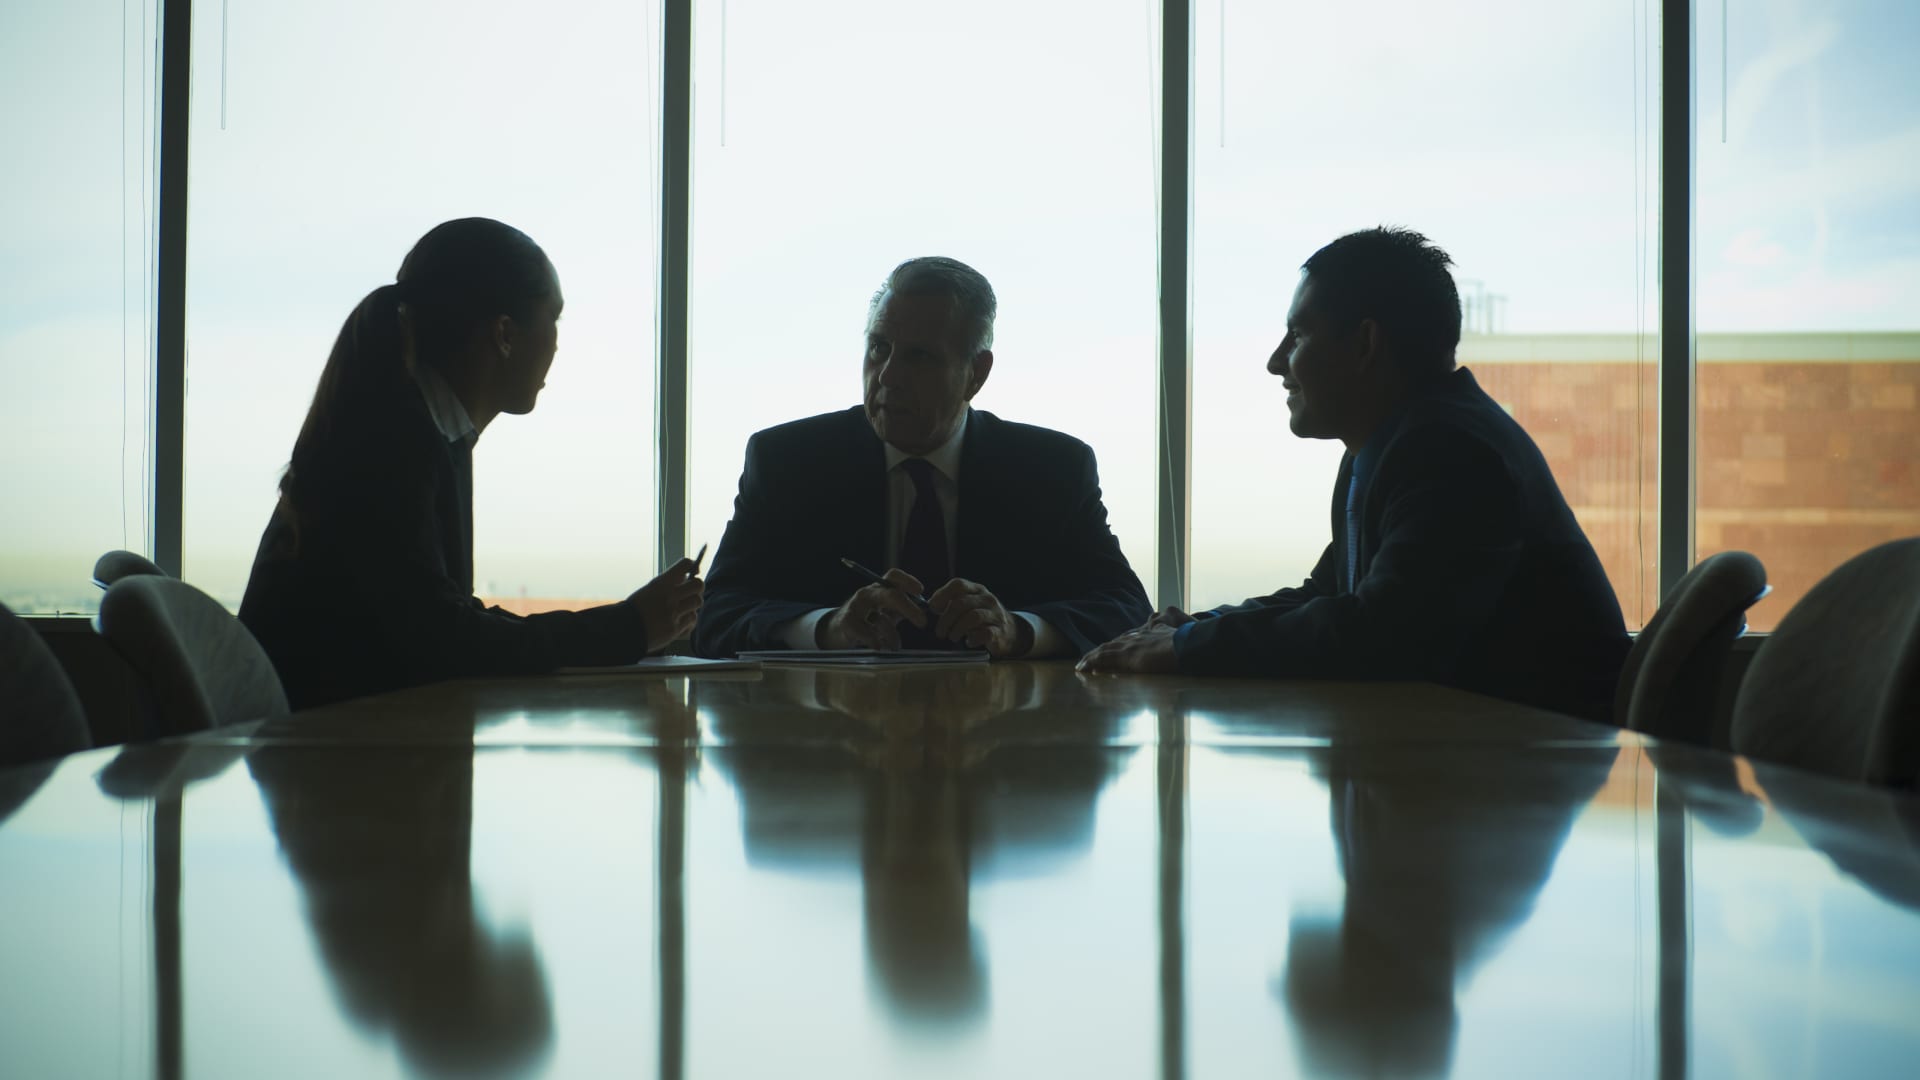 Over 60% of Fortune 1000 corporate boards lack Latino representation